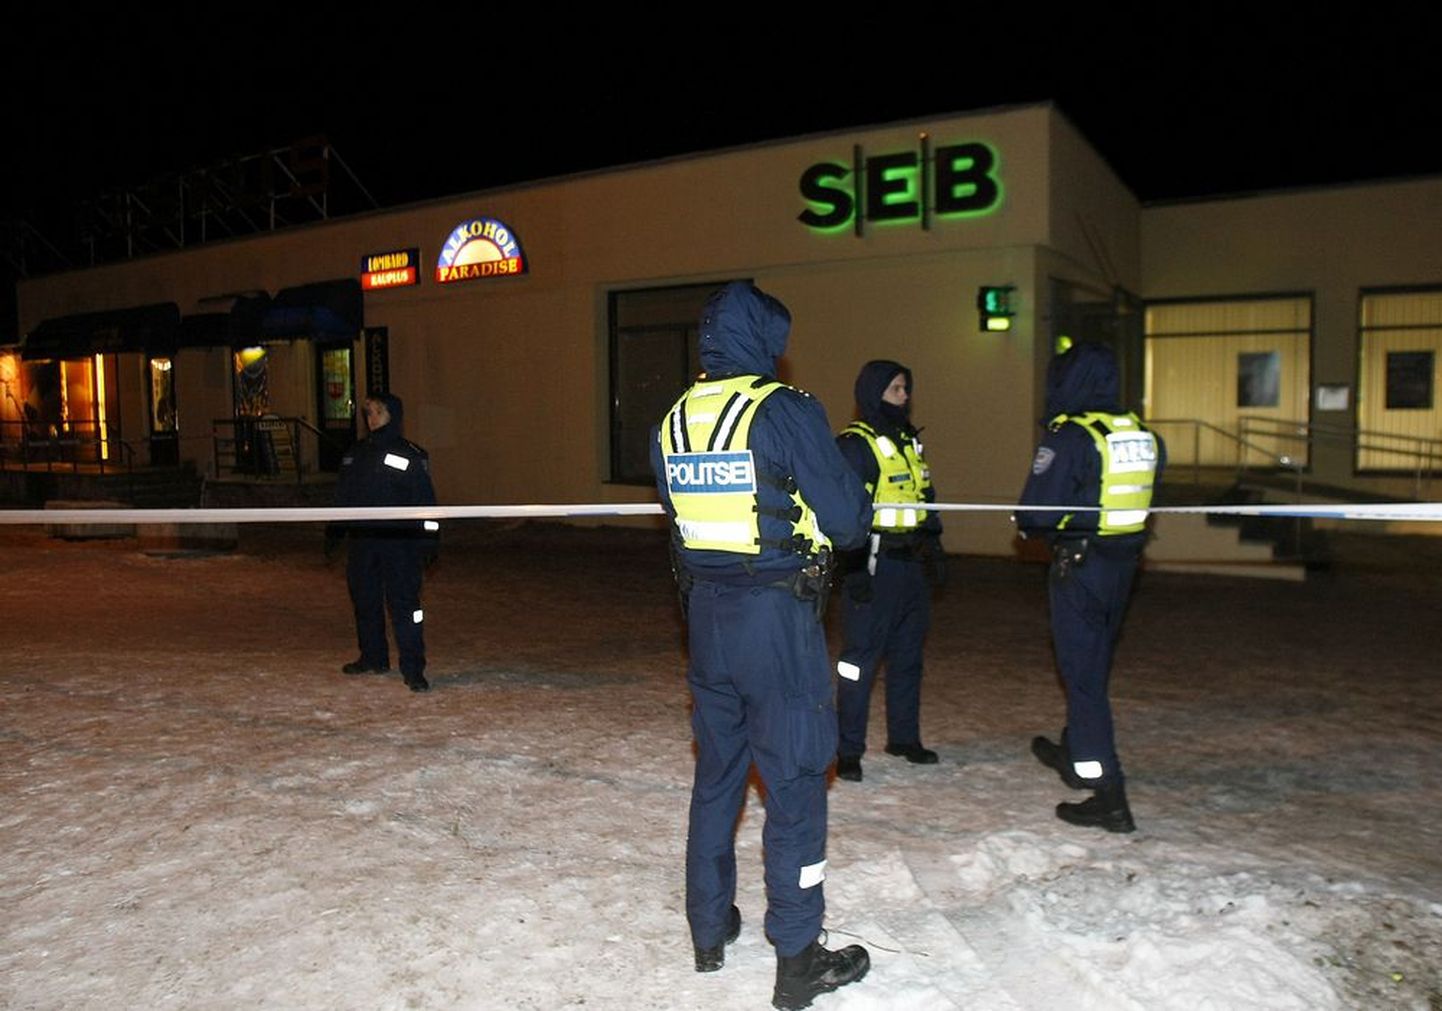 Контора банка SEB в торговом центре Прийсле, также не так давно подвергнувшаяся ограблению.